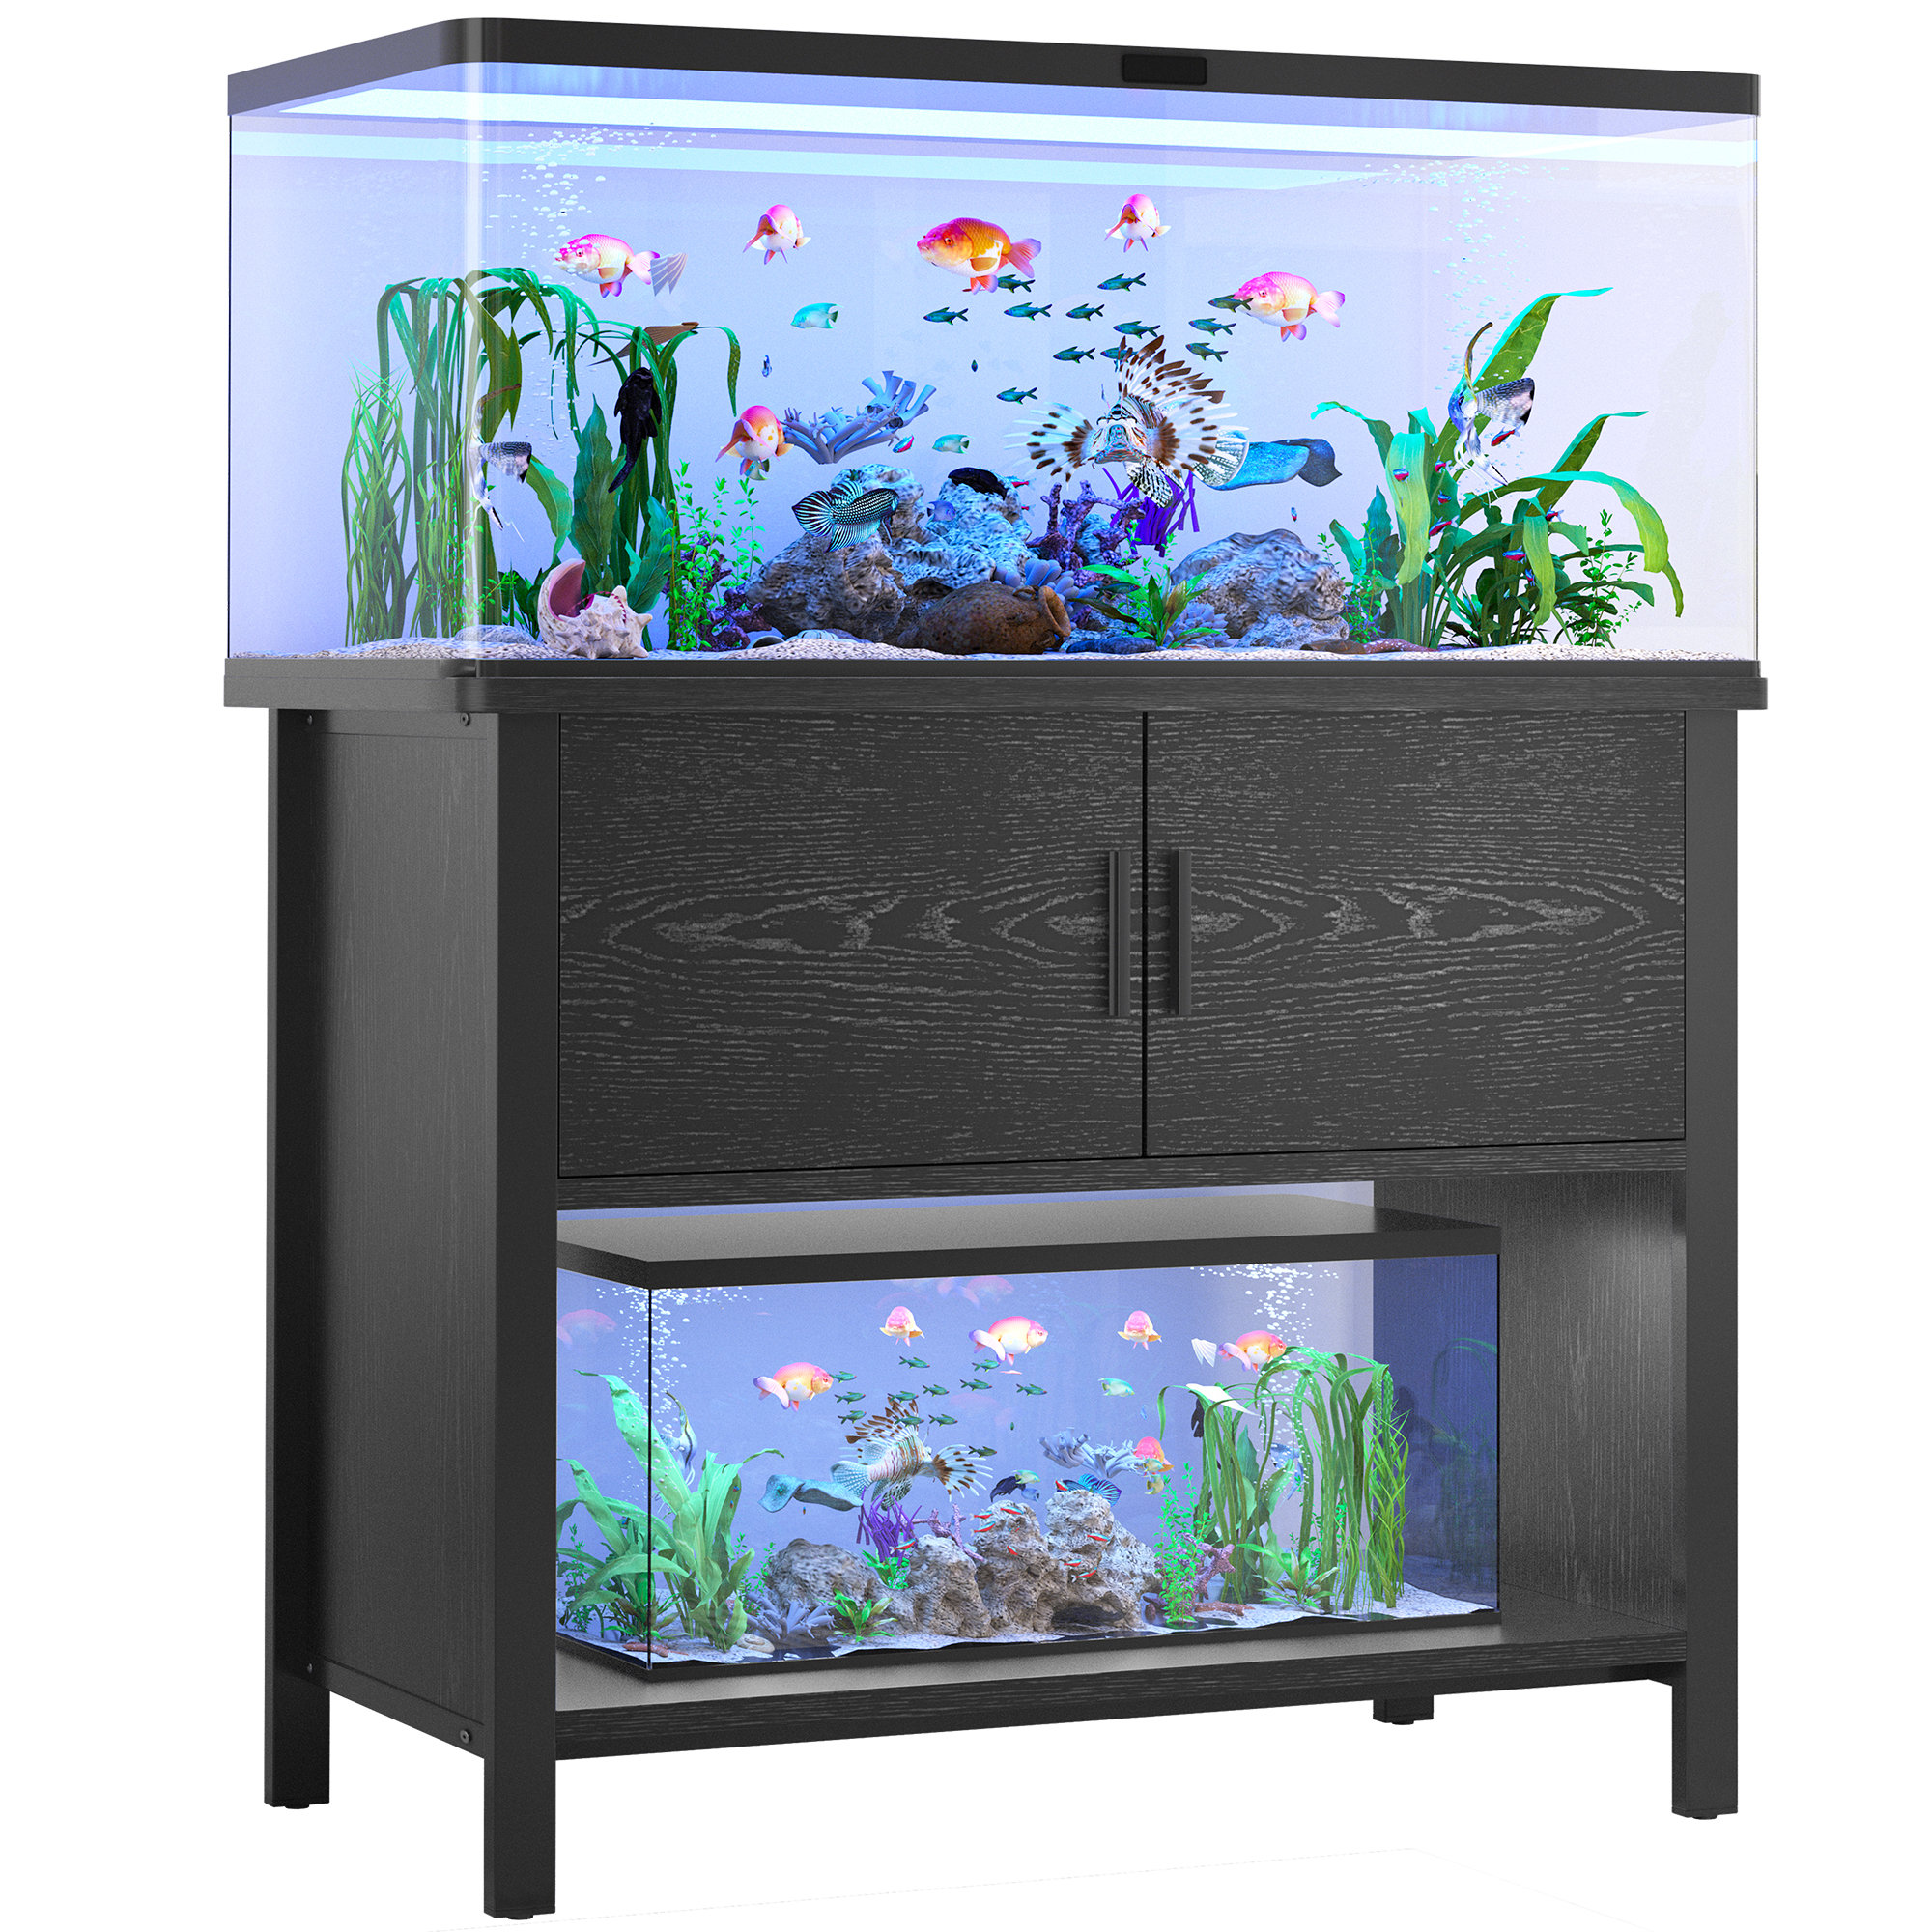  Likeem Fish Tank Stand Metal Aquarium Stand 40 Gallon